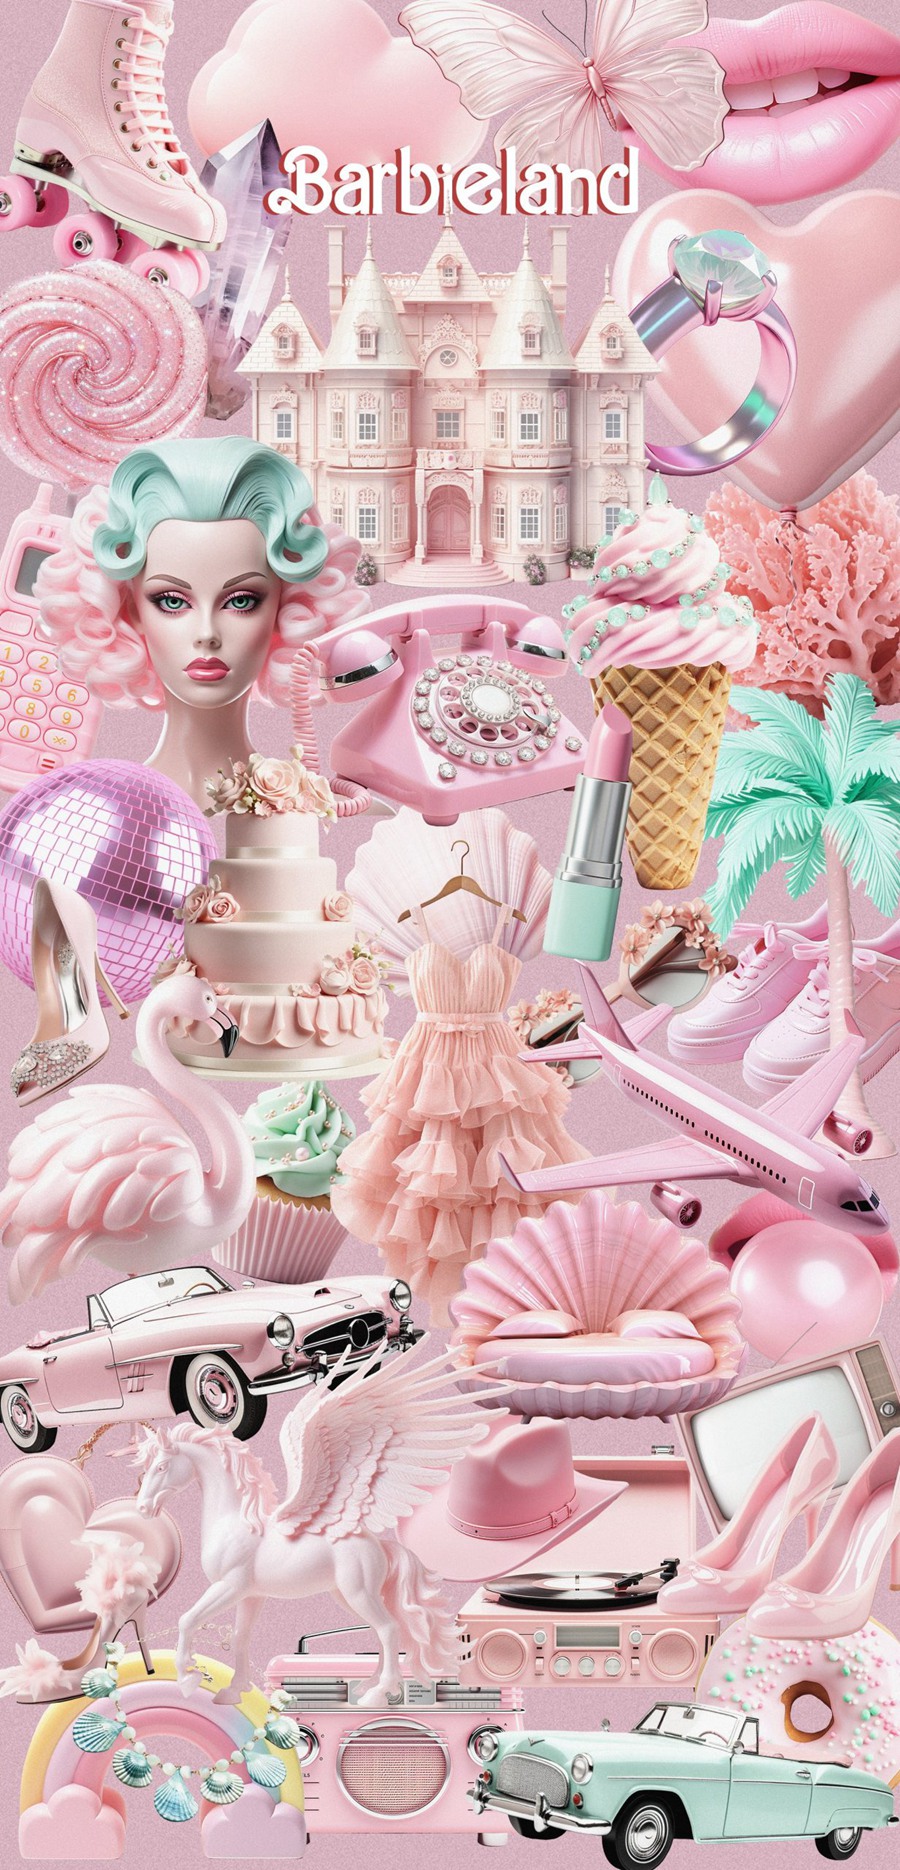 芭比乐园粉色梦幻拼贴艺术海报设计卡片包装品牌图形和背景纹理拼贴包 BARBIELAND pink graphic collage pack 图片素材 第5张